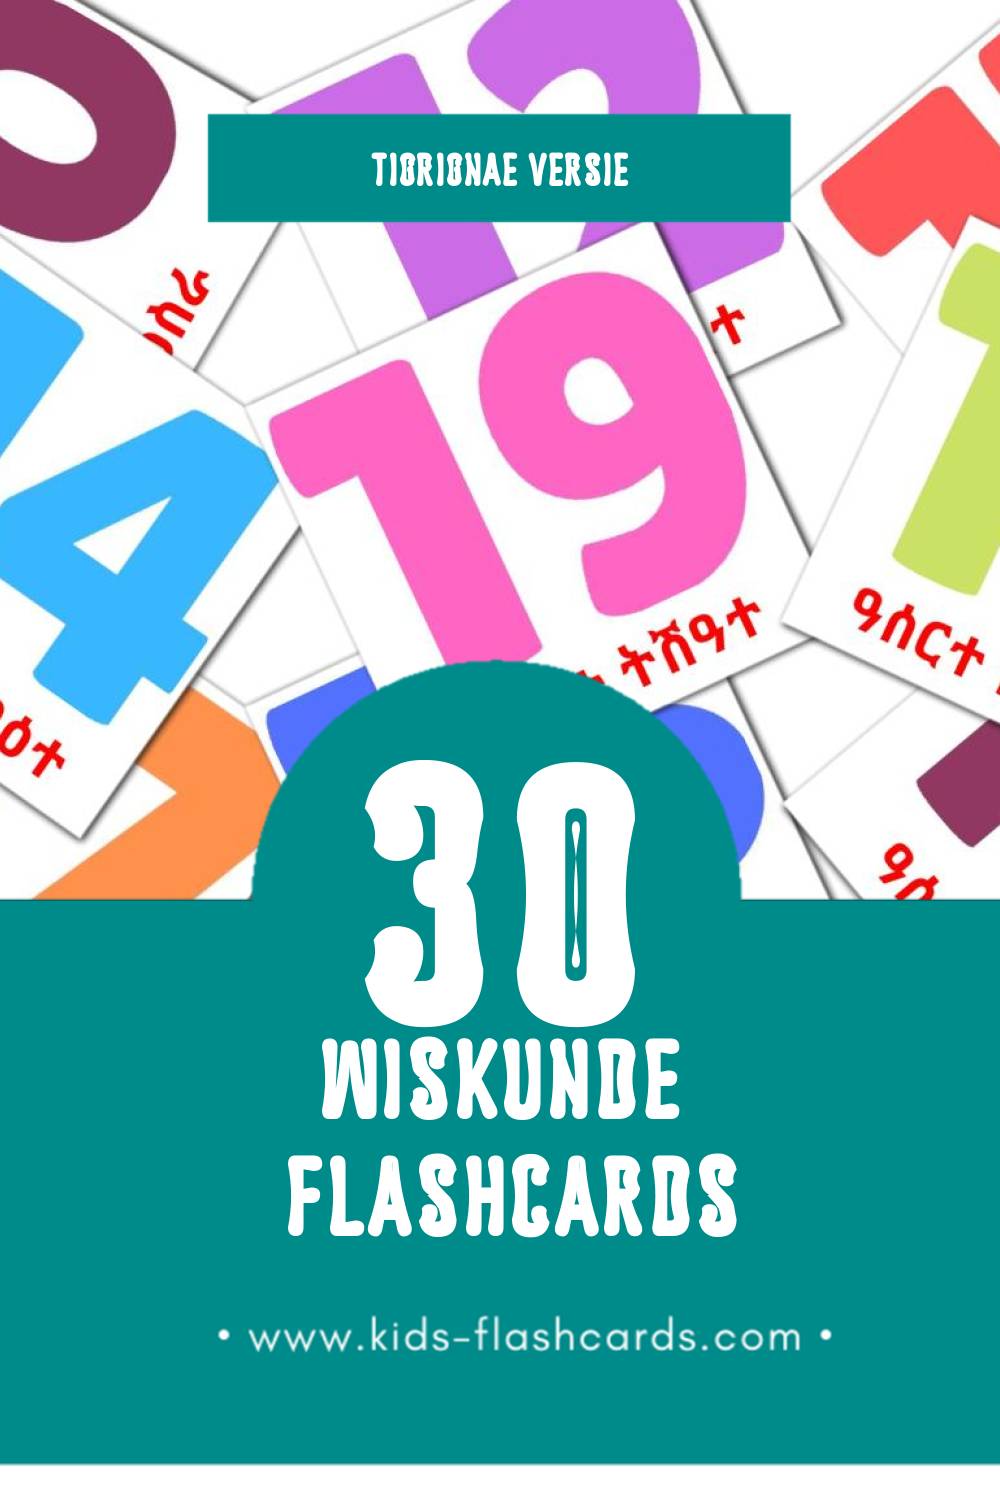 Visuele ሒሳብ Flashcards voor Kleuters (30 kaarten in het Tigrigna)